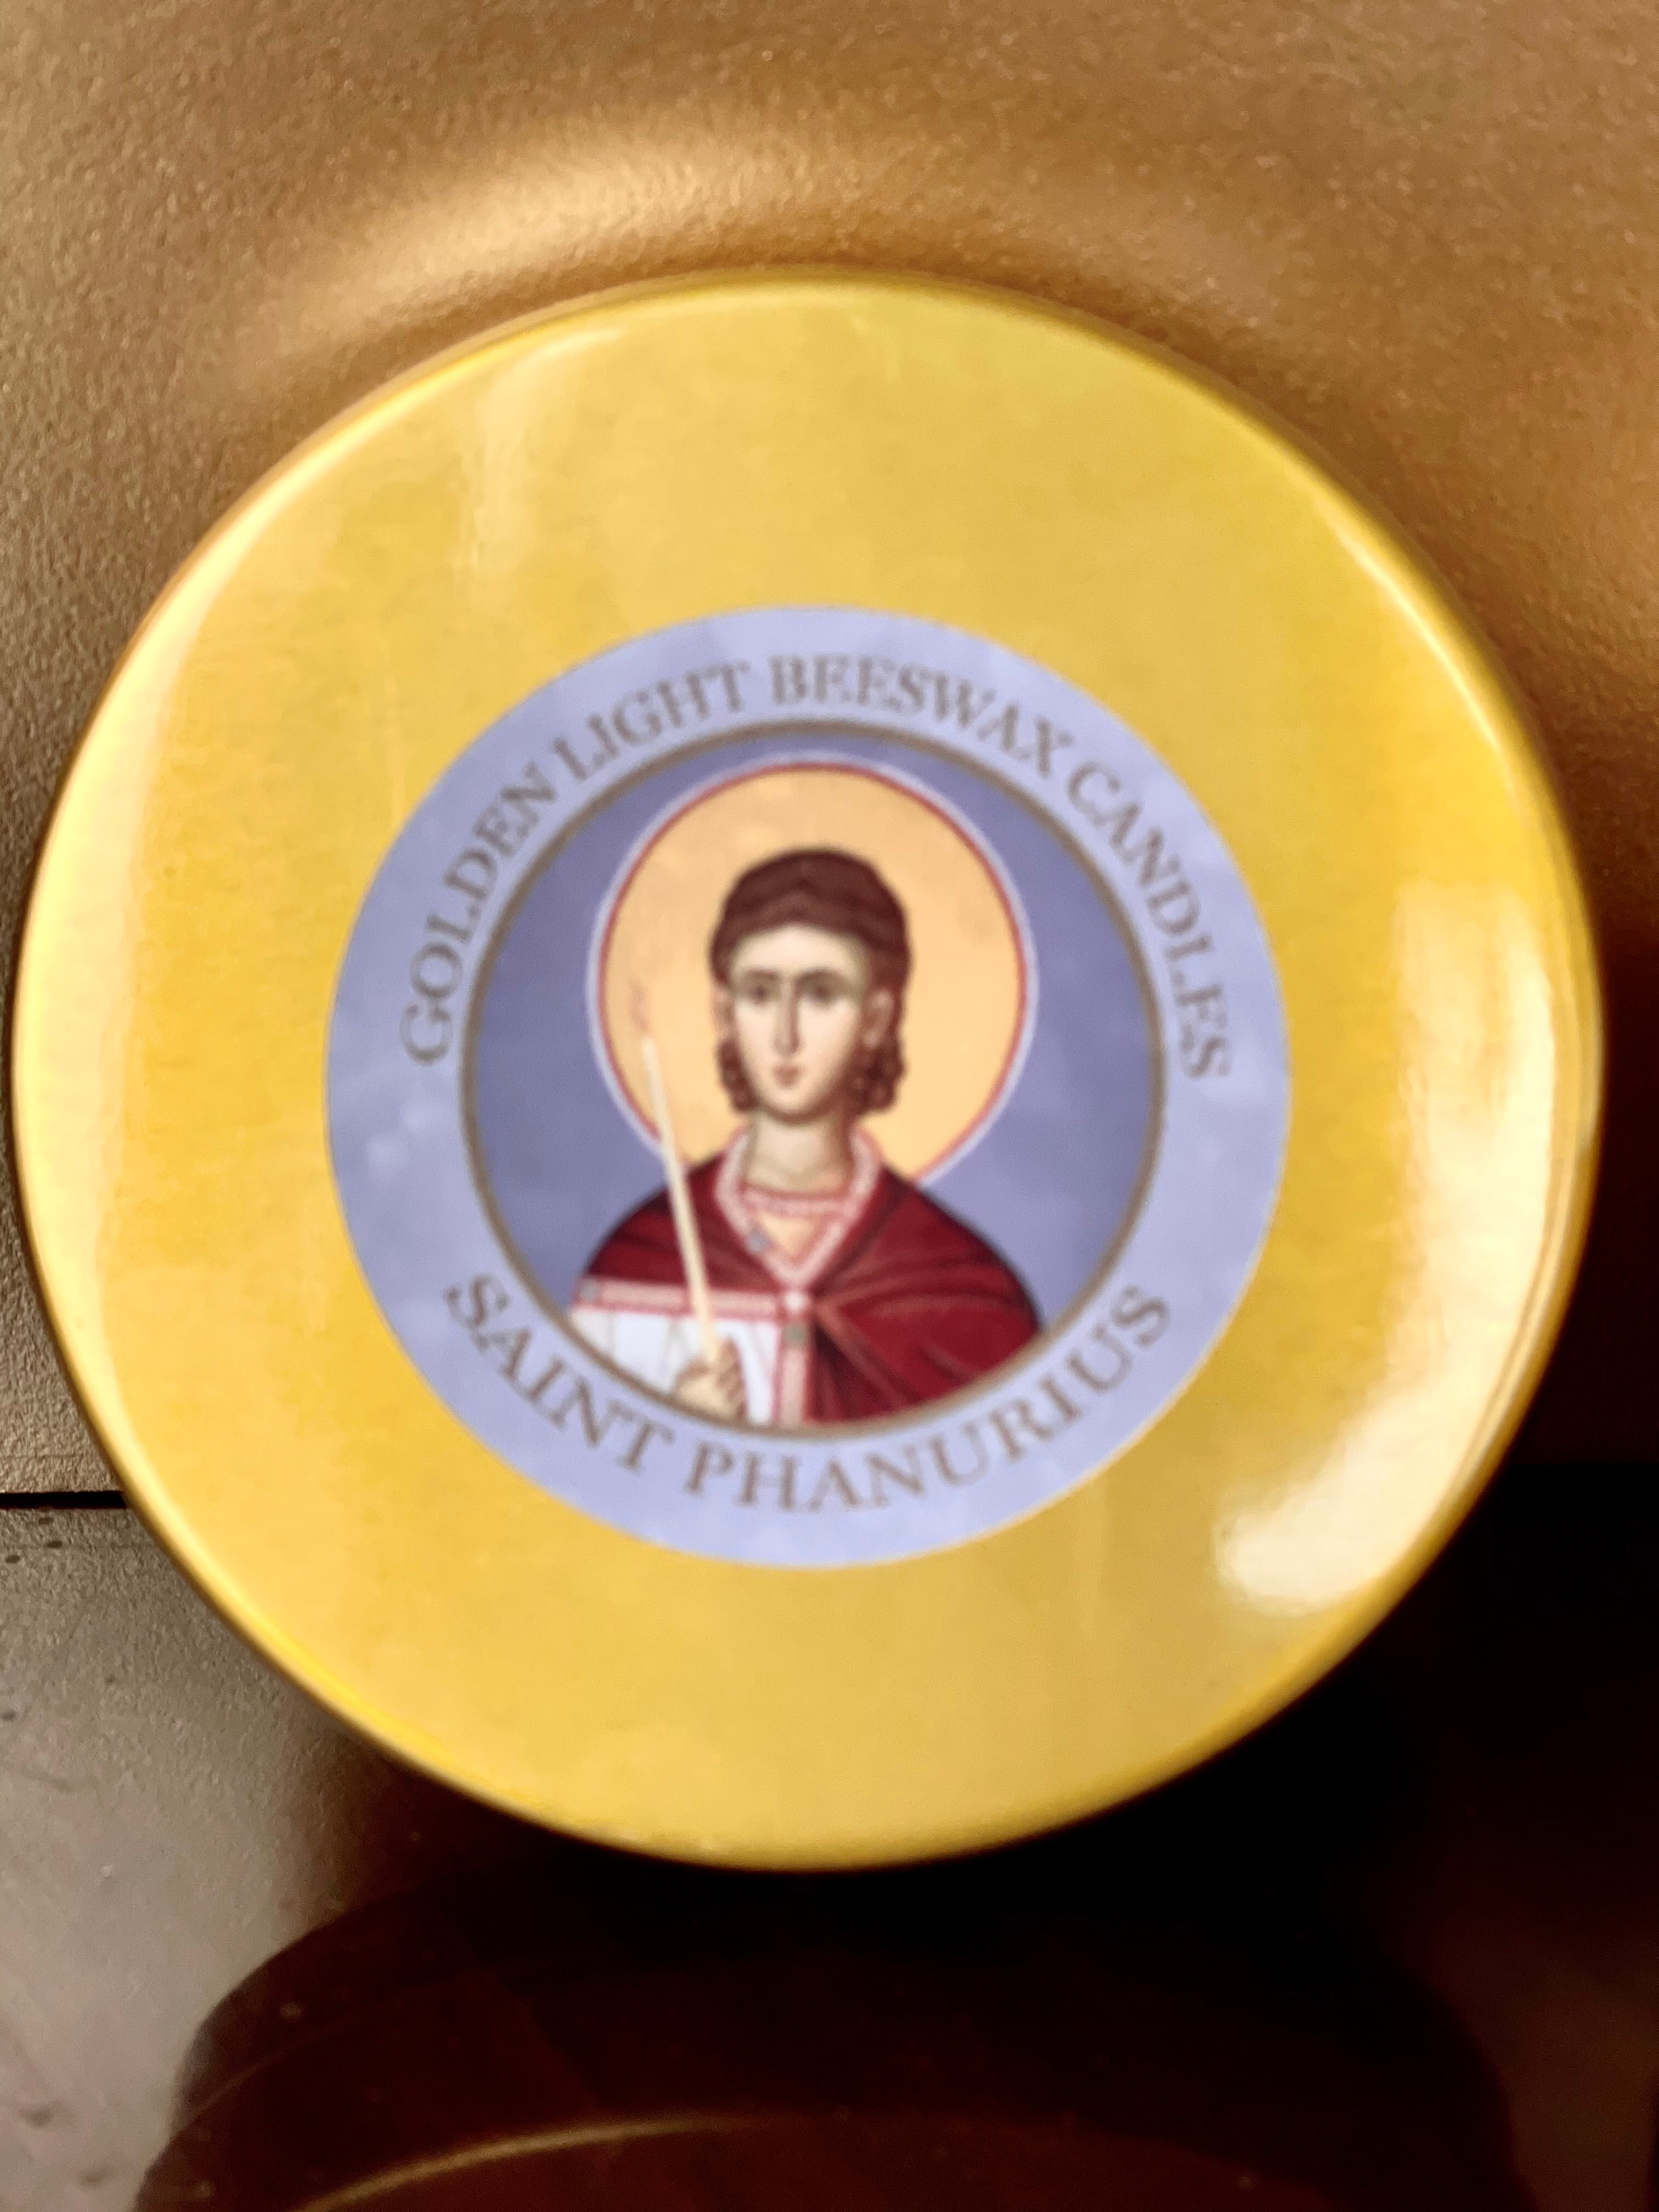 Saint Phanurius Prayer Candle